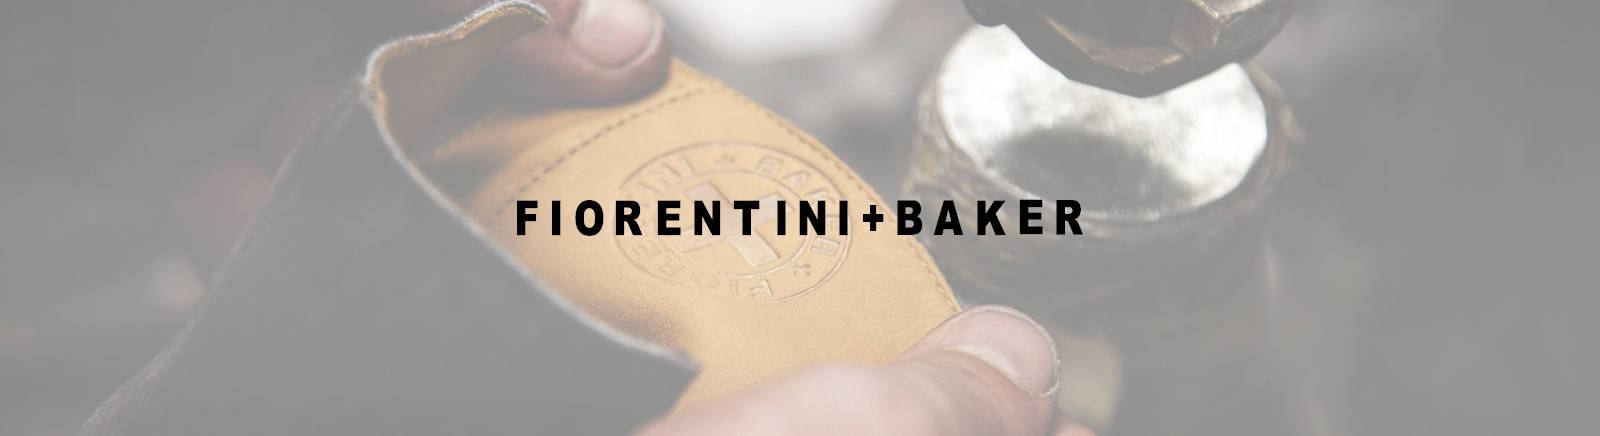 Fiorentini + Baker Langschaftstiefel im Online-Shop von GISY kaufen